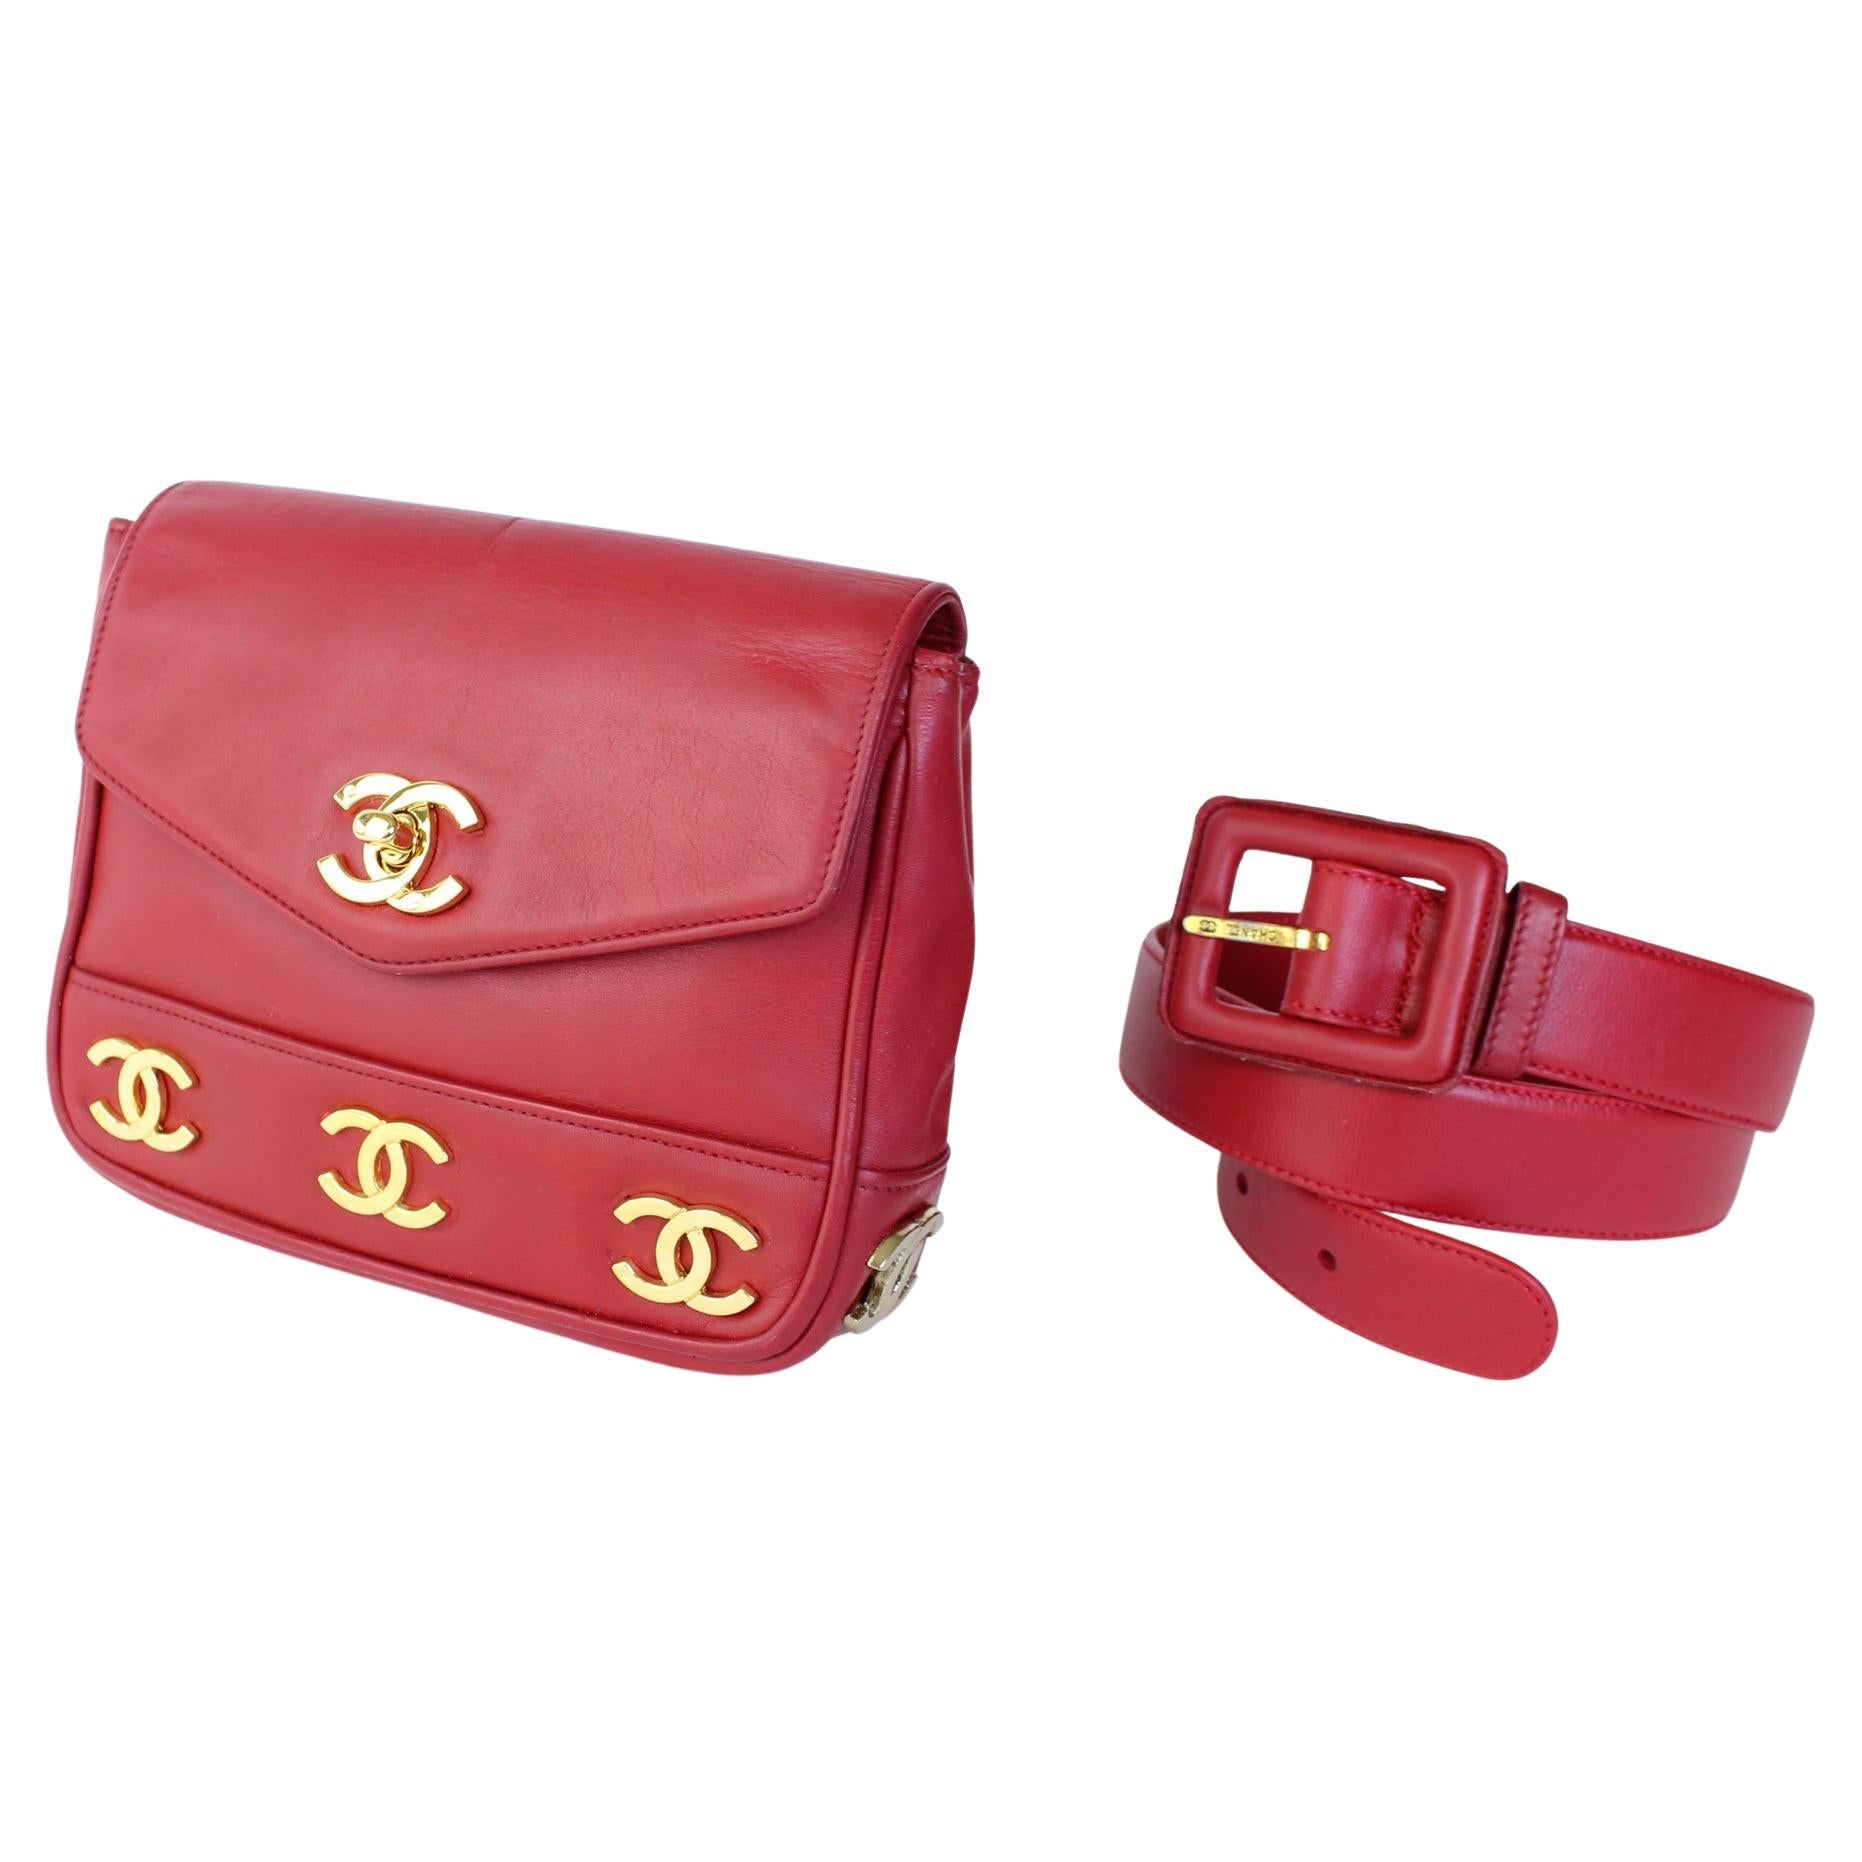 Chanel Bum Bag Vintage - 10 For Sale on 1stDibs